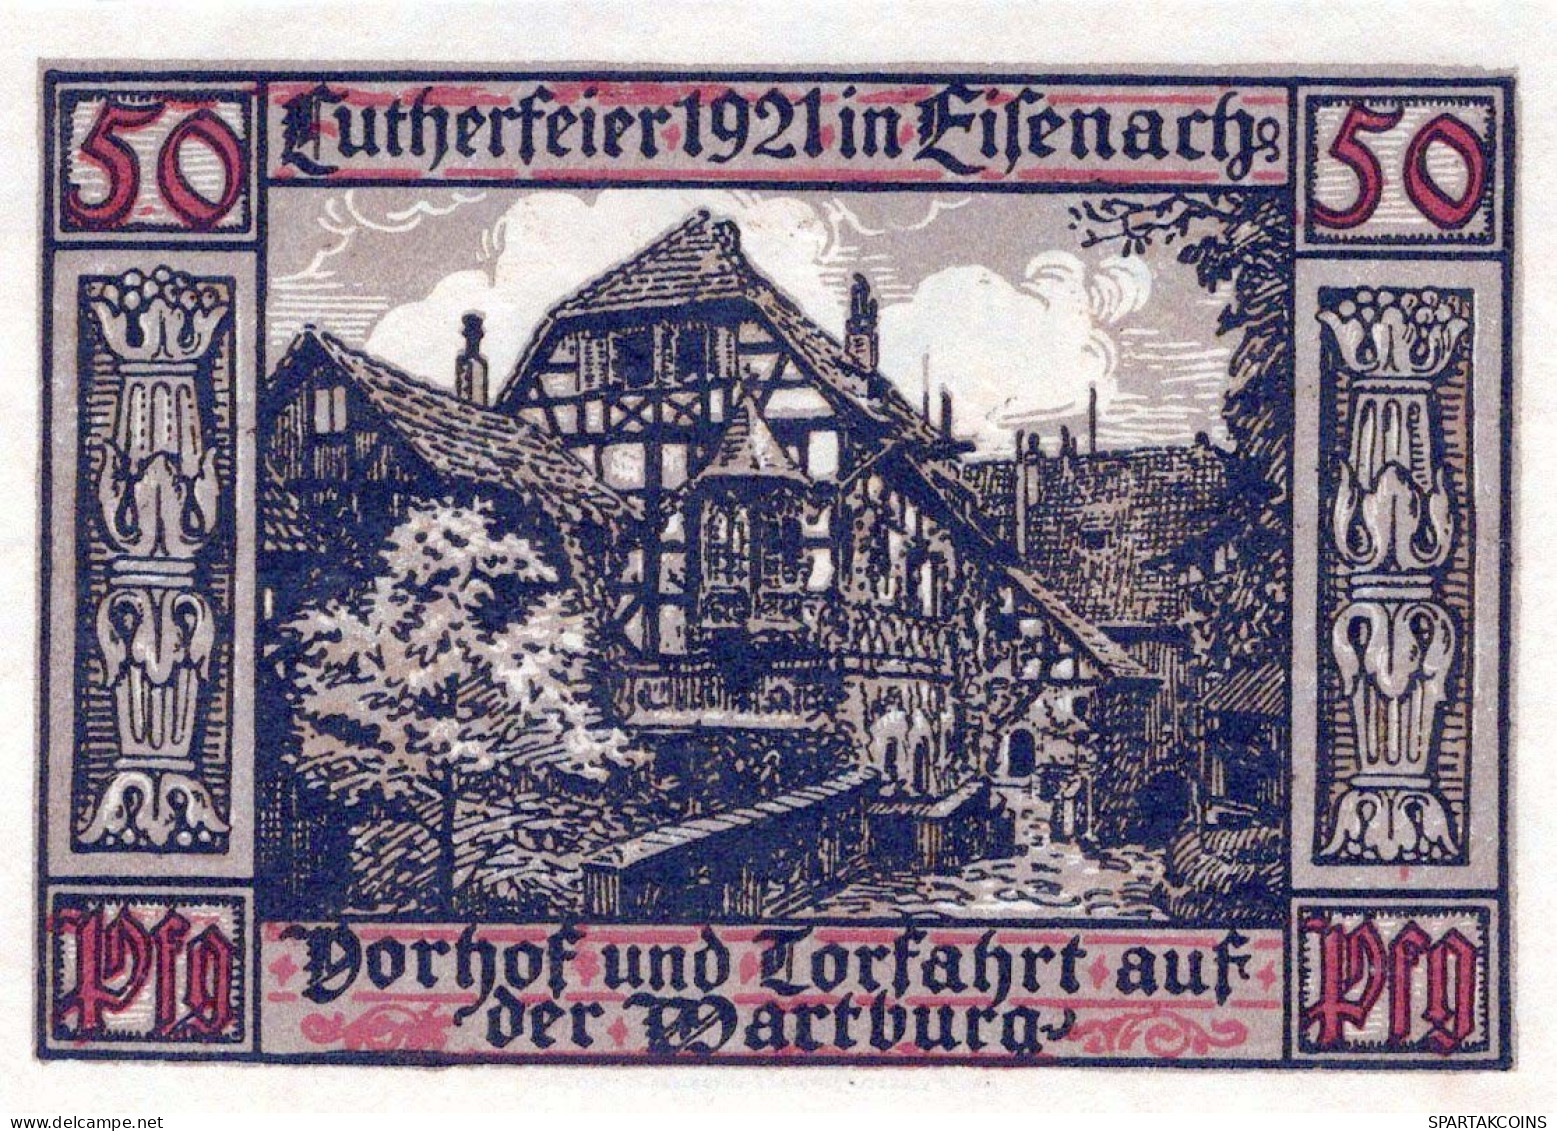 50 PFENNIG 1921 Stadt EISENACH Thuringia UNC DEUTSCHLAND Notgeld Banknote #PB118 - [11] Lokale Uitgaven